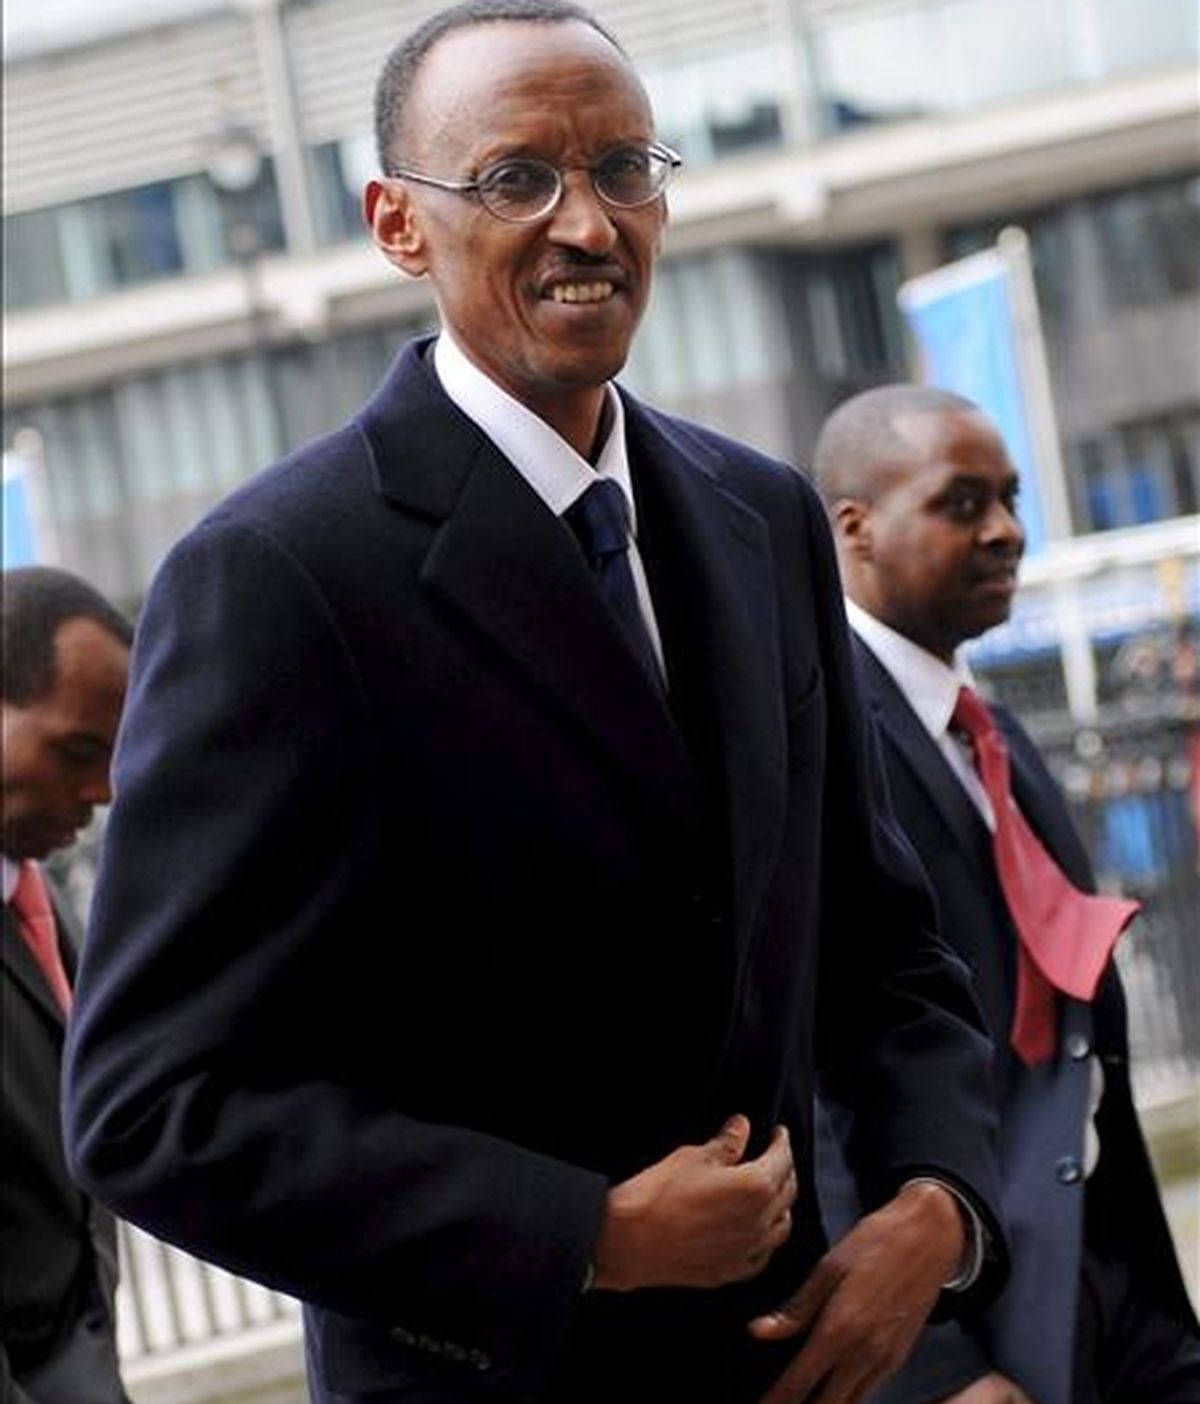 La selección del presidente de Ruanda, Paul Kagame, ha sido criticada por formaciones políticas y organizaciones de derechos humanos españolas, que han recordado las acusaciones de genocidio formuladas contra él. EFE/Archivo